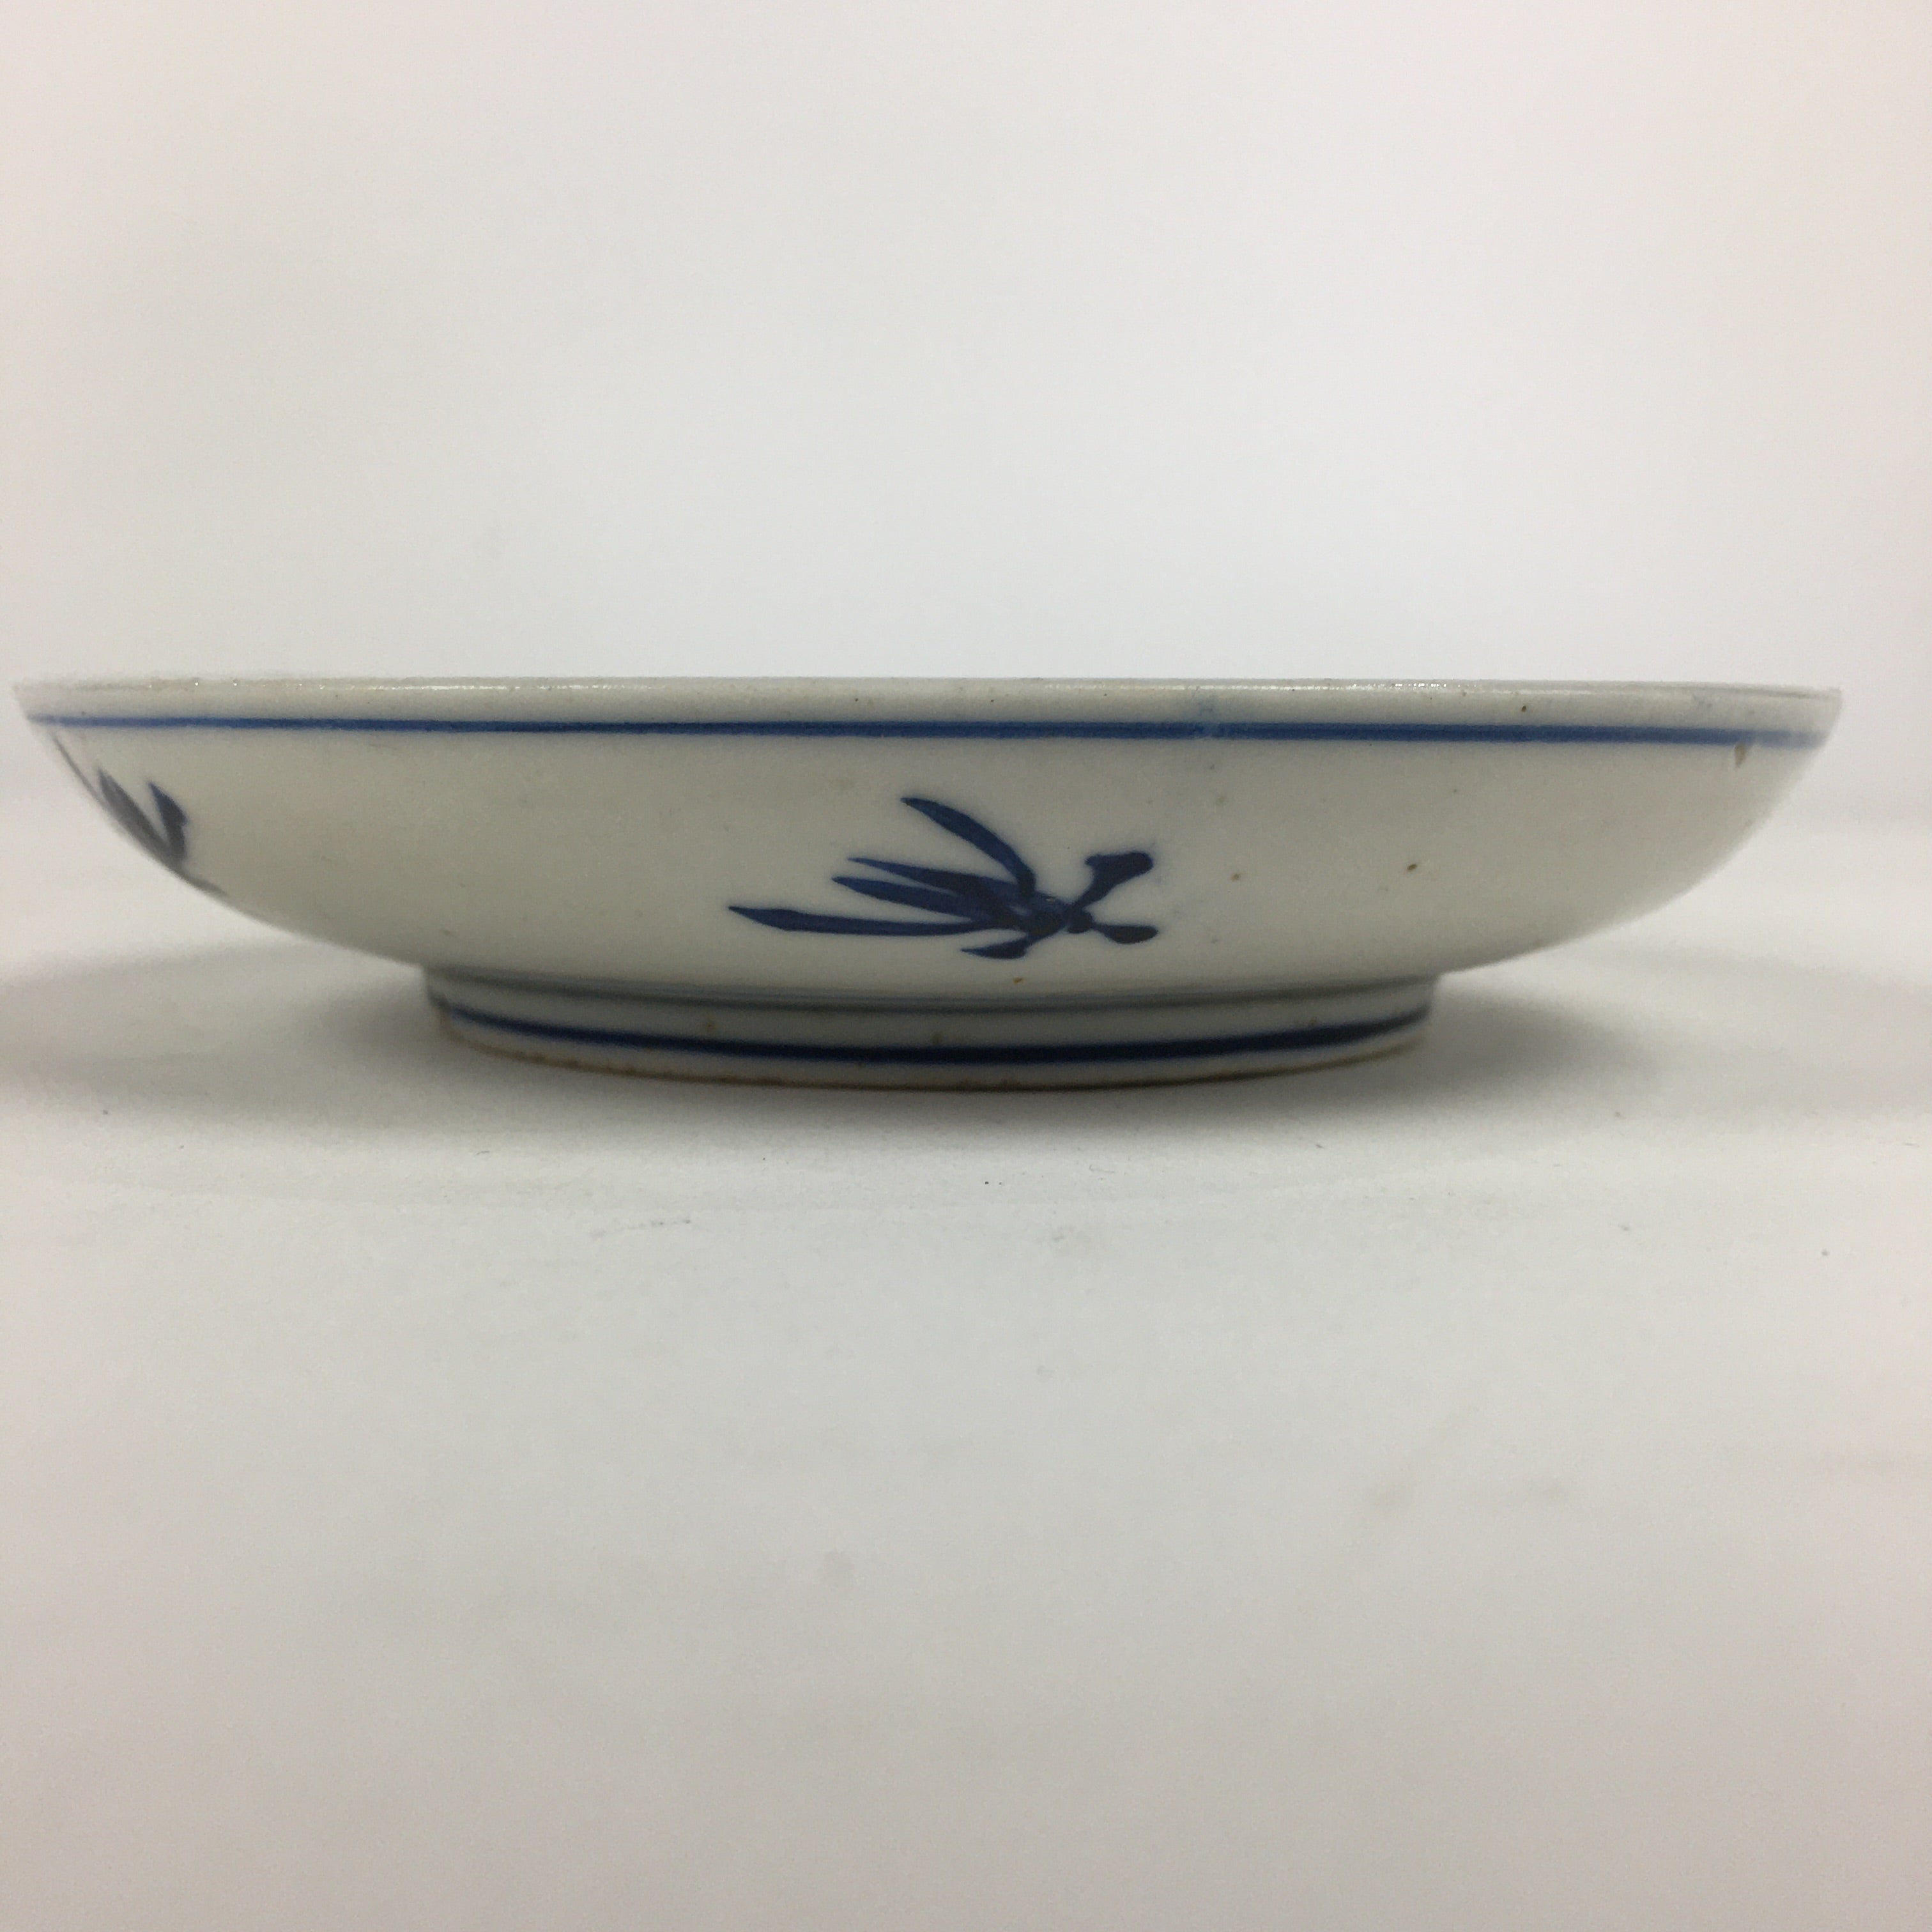 Japanese Porcelain Small Plate Kozara Vtg Blue Flower Dandelion Kozara PP802